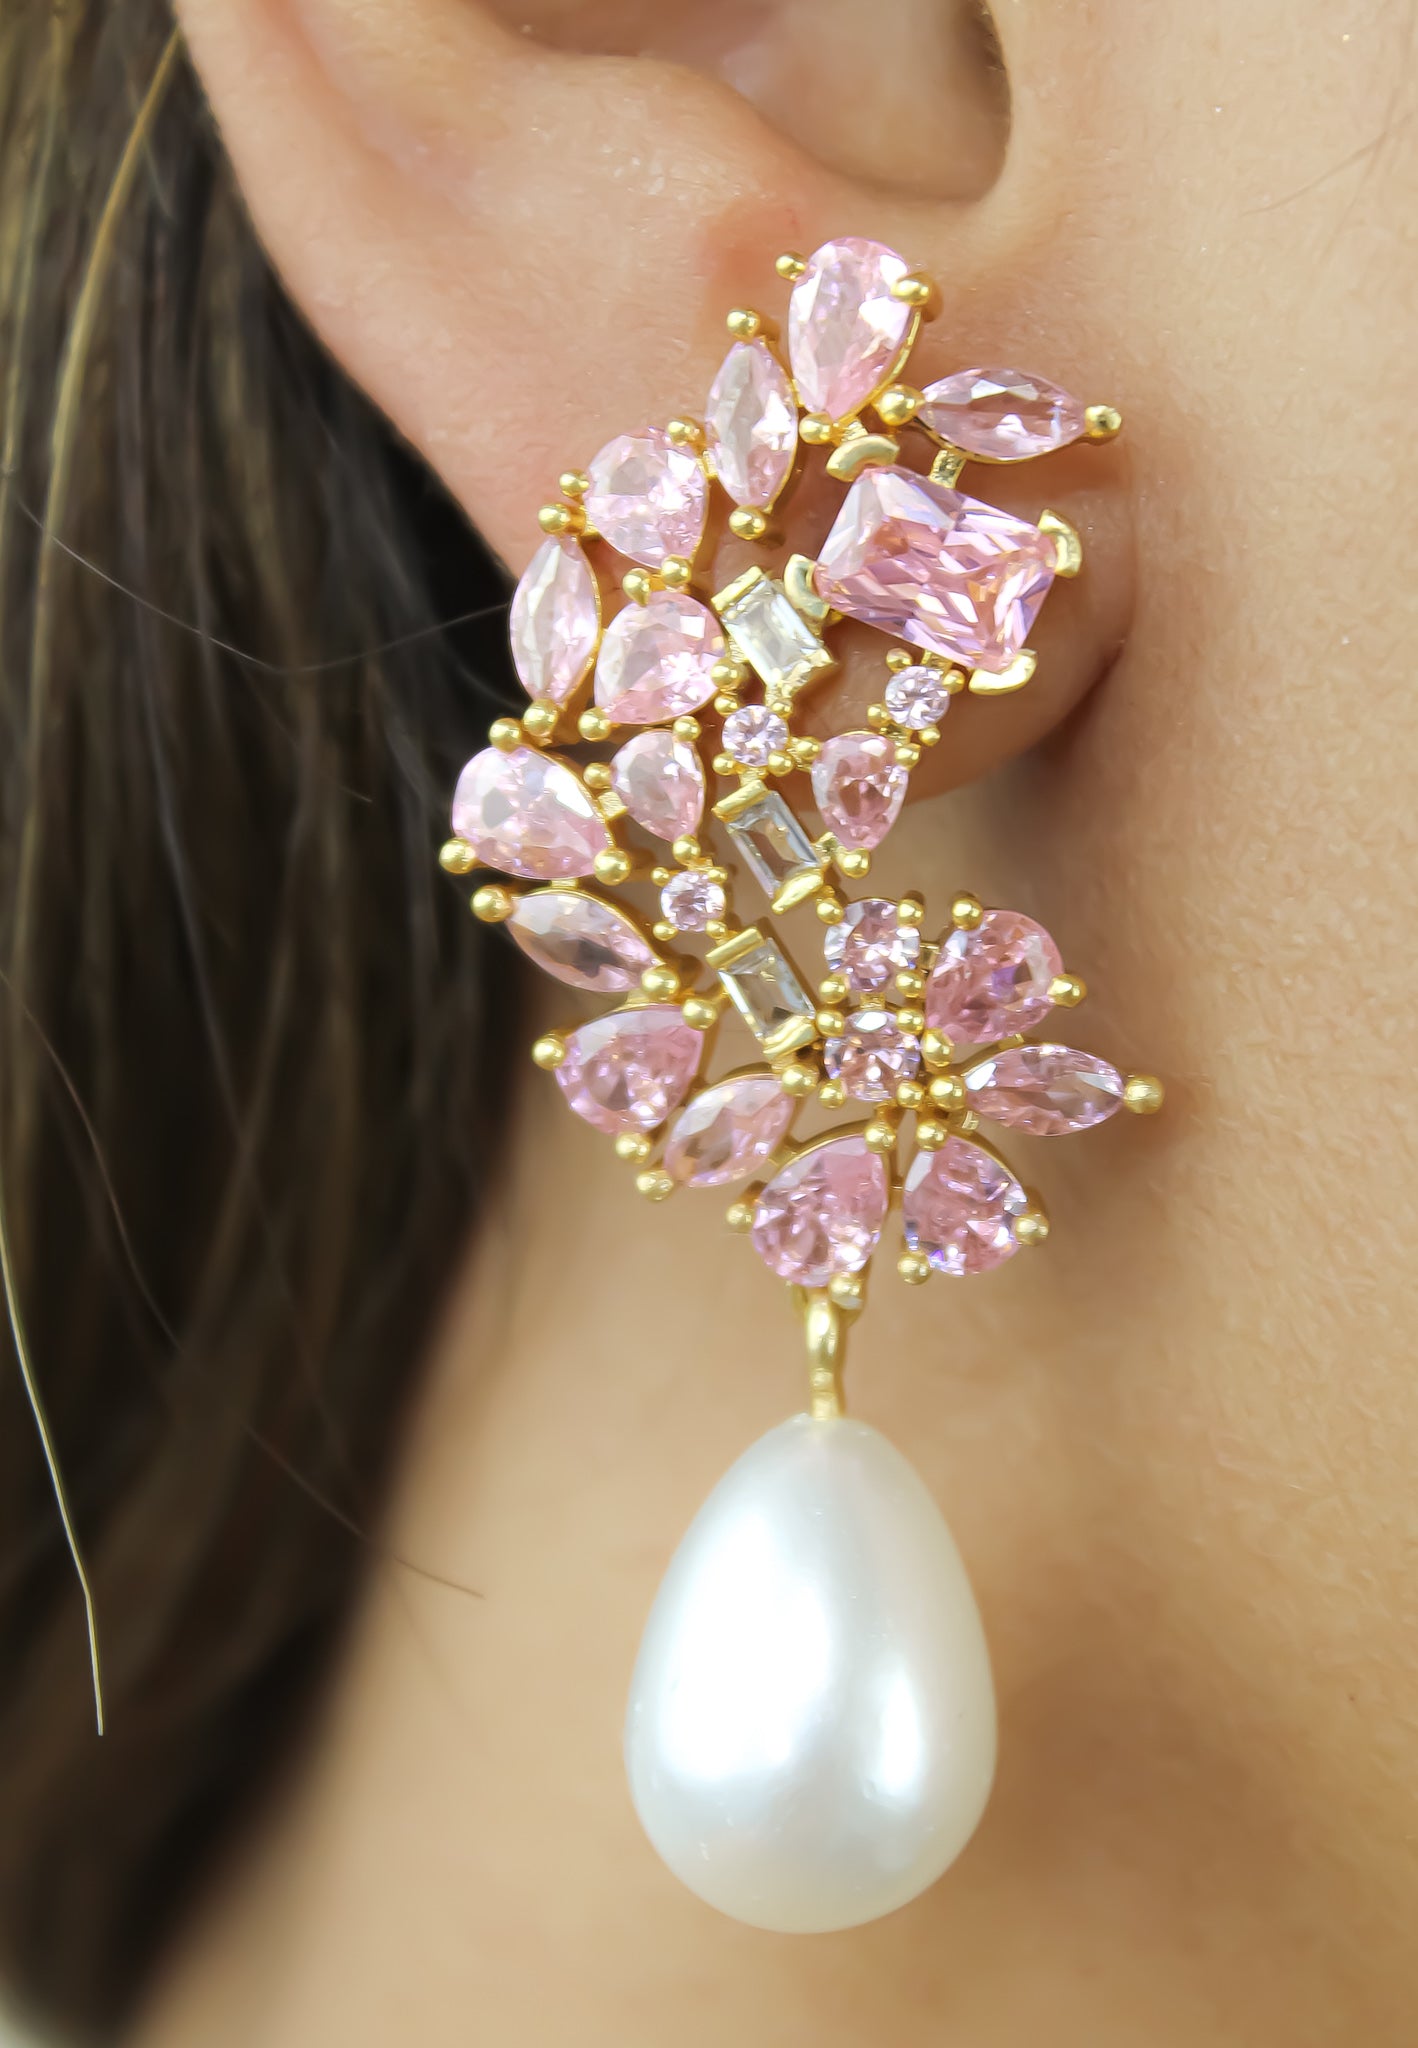 Golden Frosty Pearl Earrings